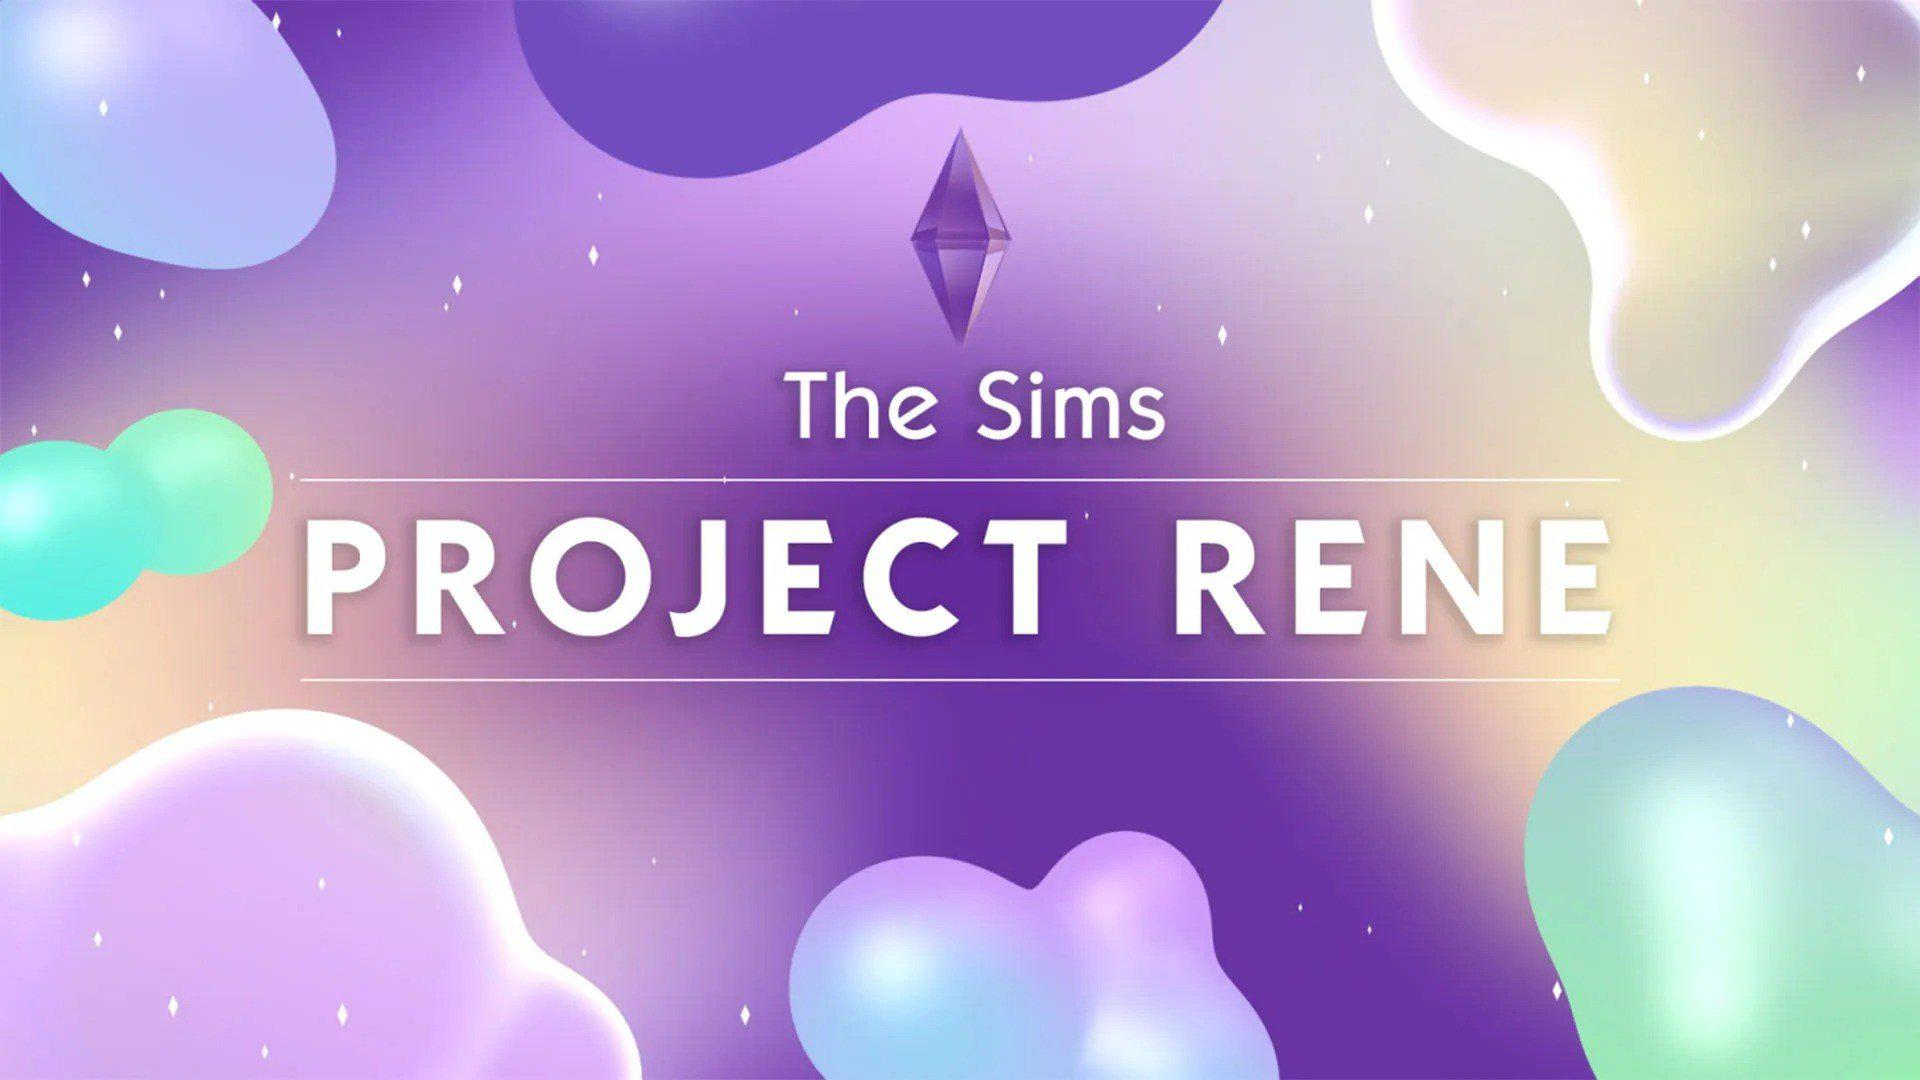 Novo The Sims vem sendo trabalhado na Maxis sob o codinome Project Rene.